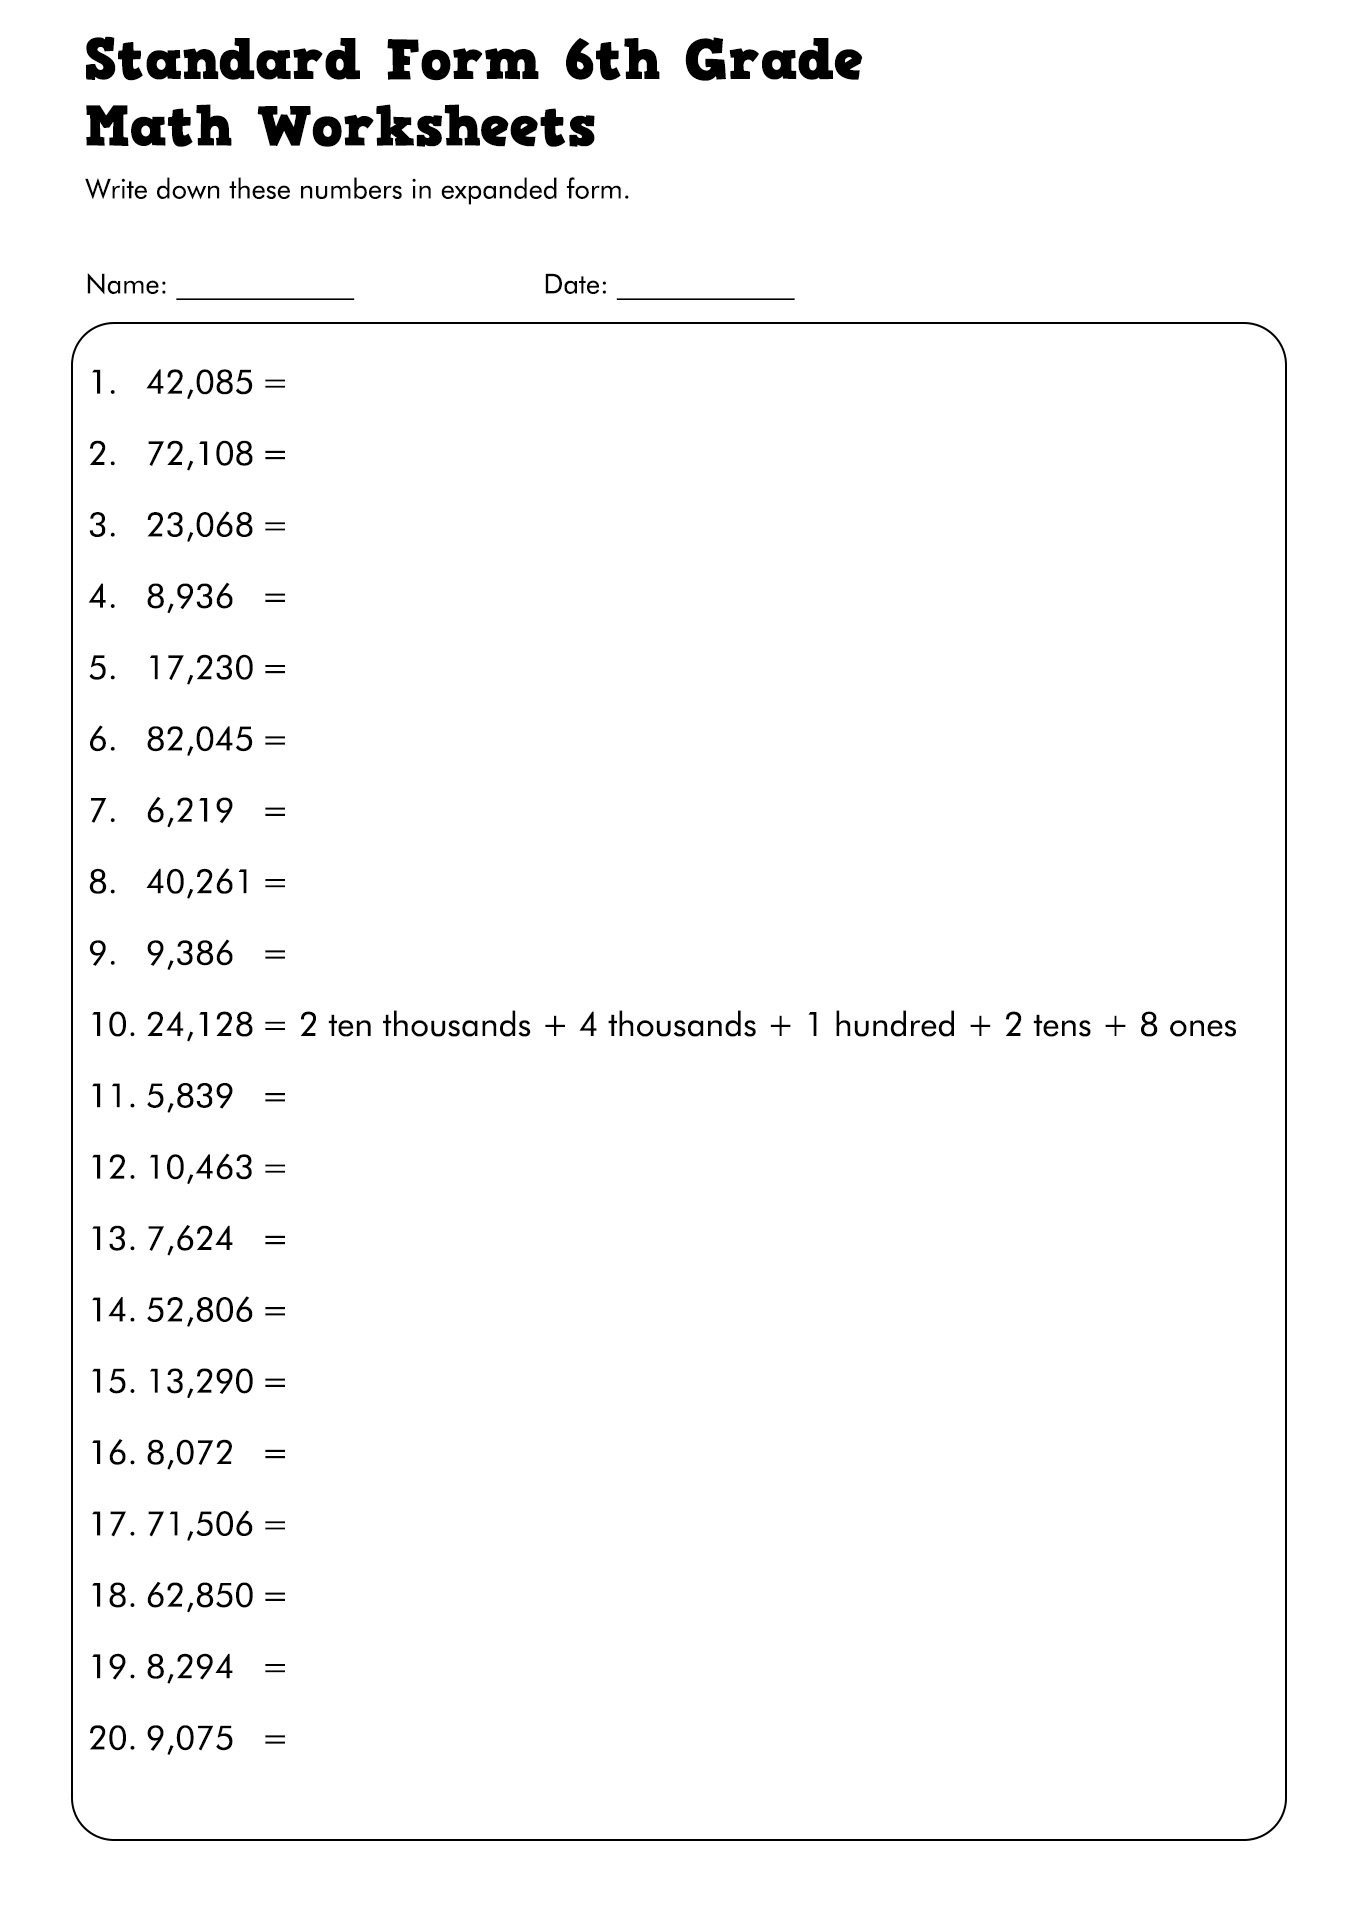 Standard Form 6th Grade Math Worksheets Image